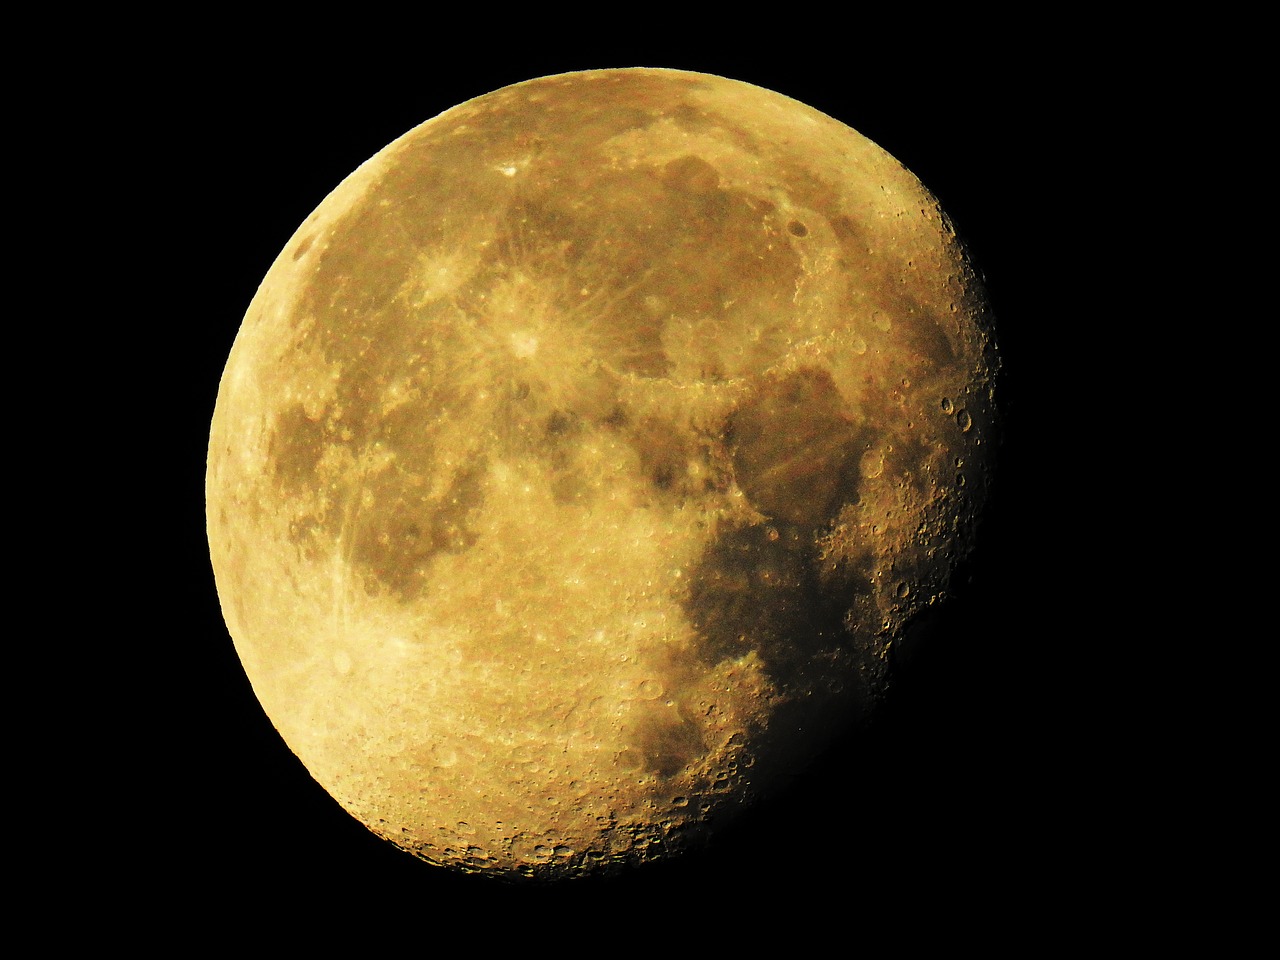 Image - super moon moon waning moon luna